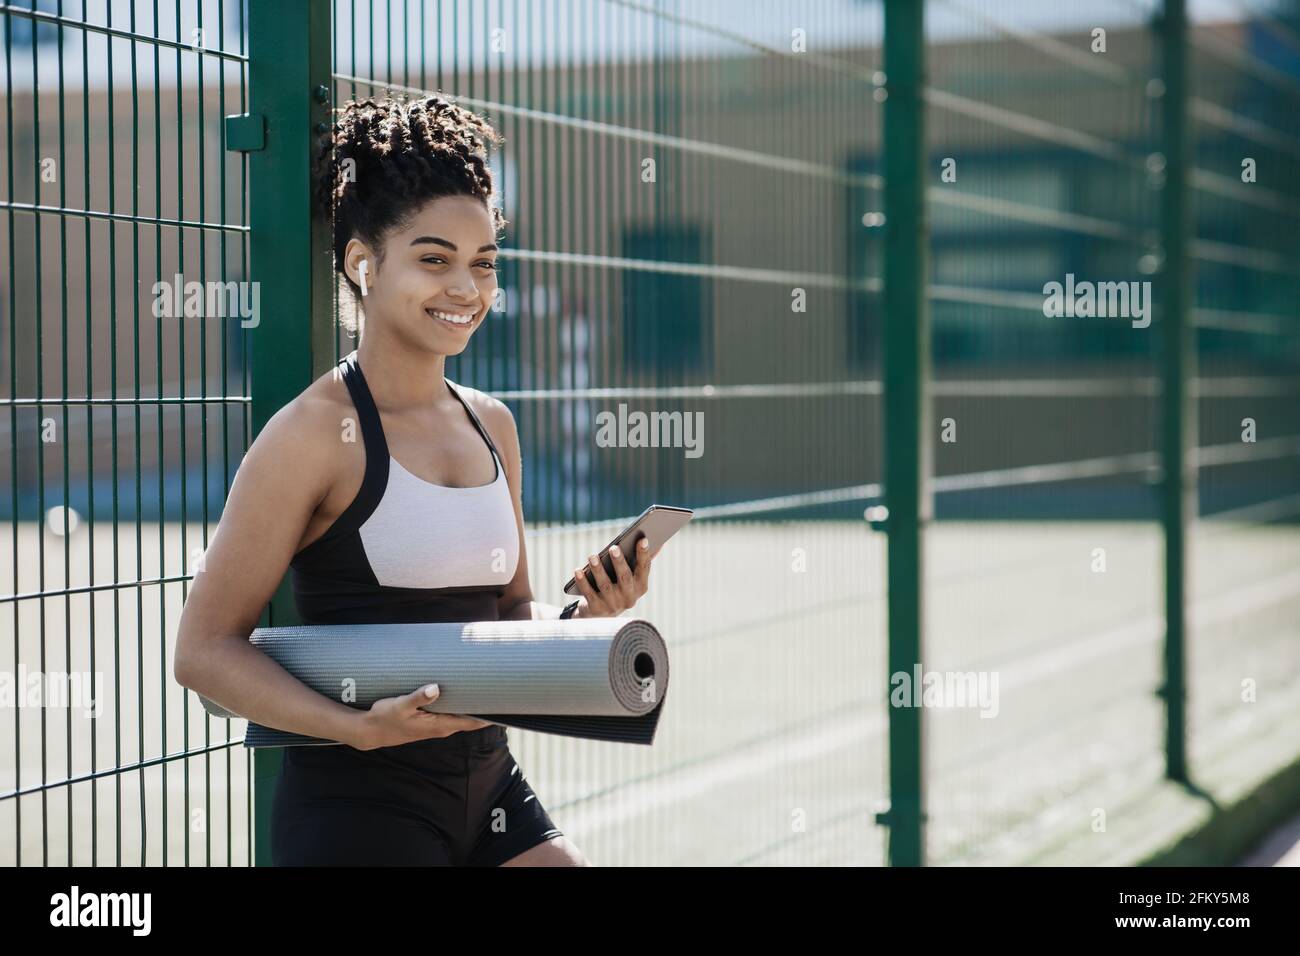 Gesunder, aktiver Lebensstil und Workout im Freien im Stadion Stockfoto